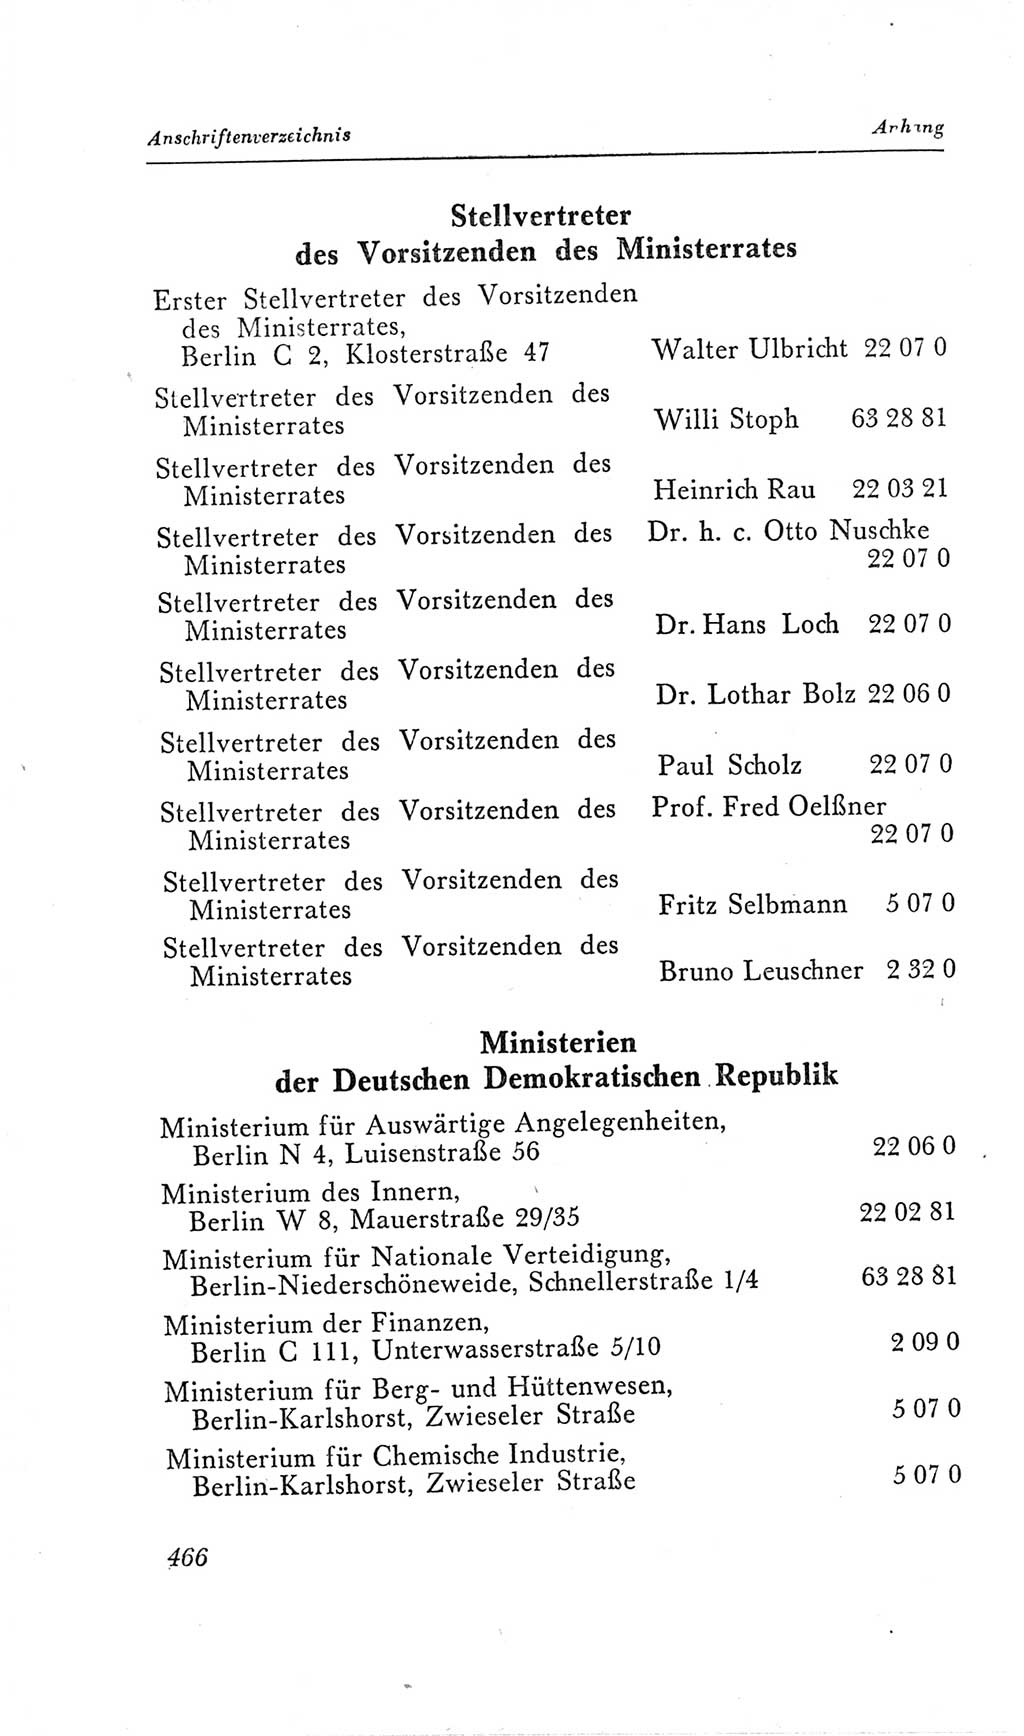 Handbuch der Volkskammer (VK) der Deutschen Demokratischen Republik (DDR), 2. Wahlperiode 1954-1958, Seite 466 (Hdb. VK. DDR, 2. WP. 1954-1958, S. 466)